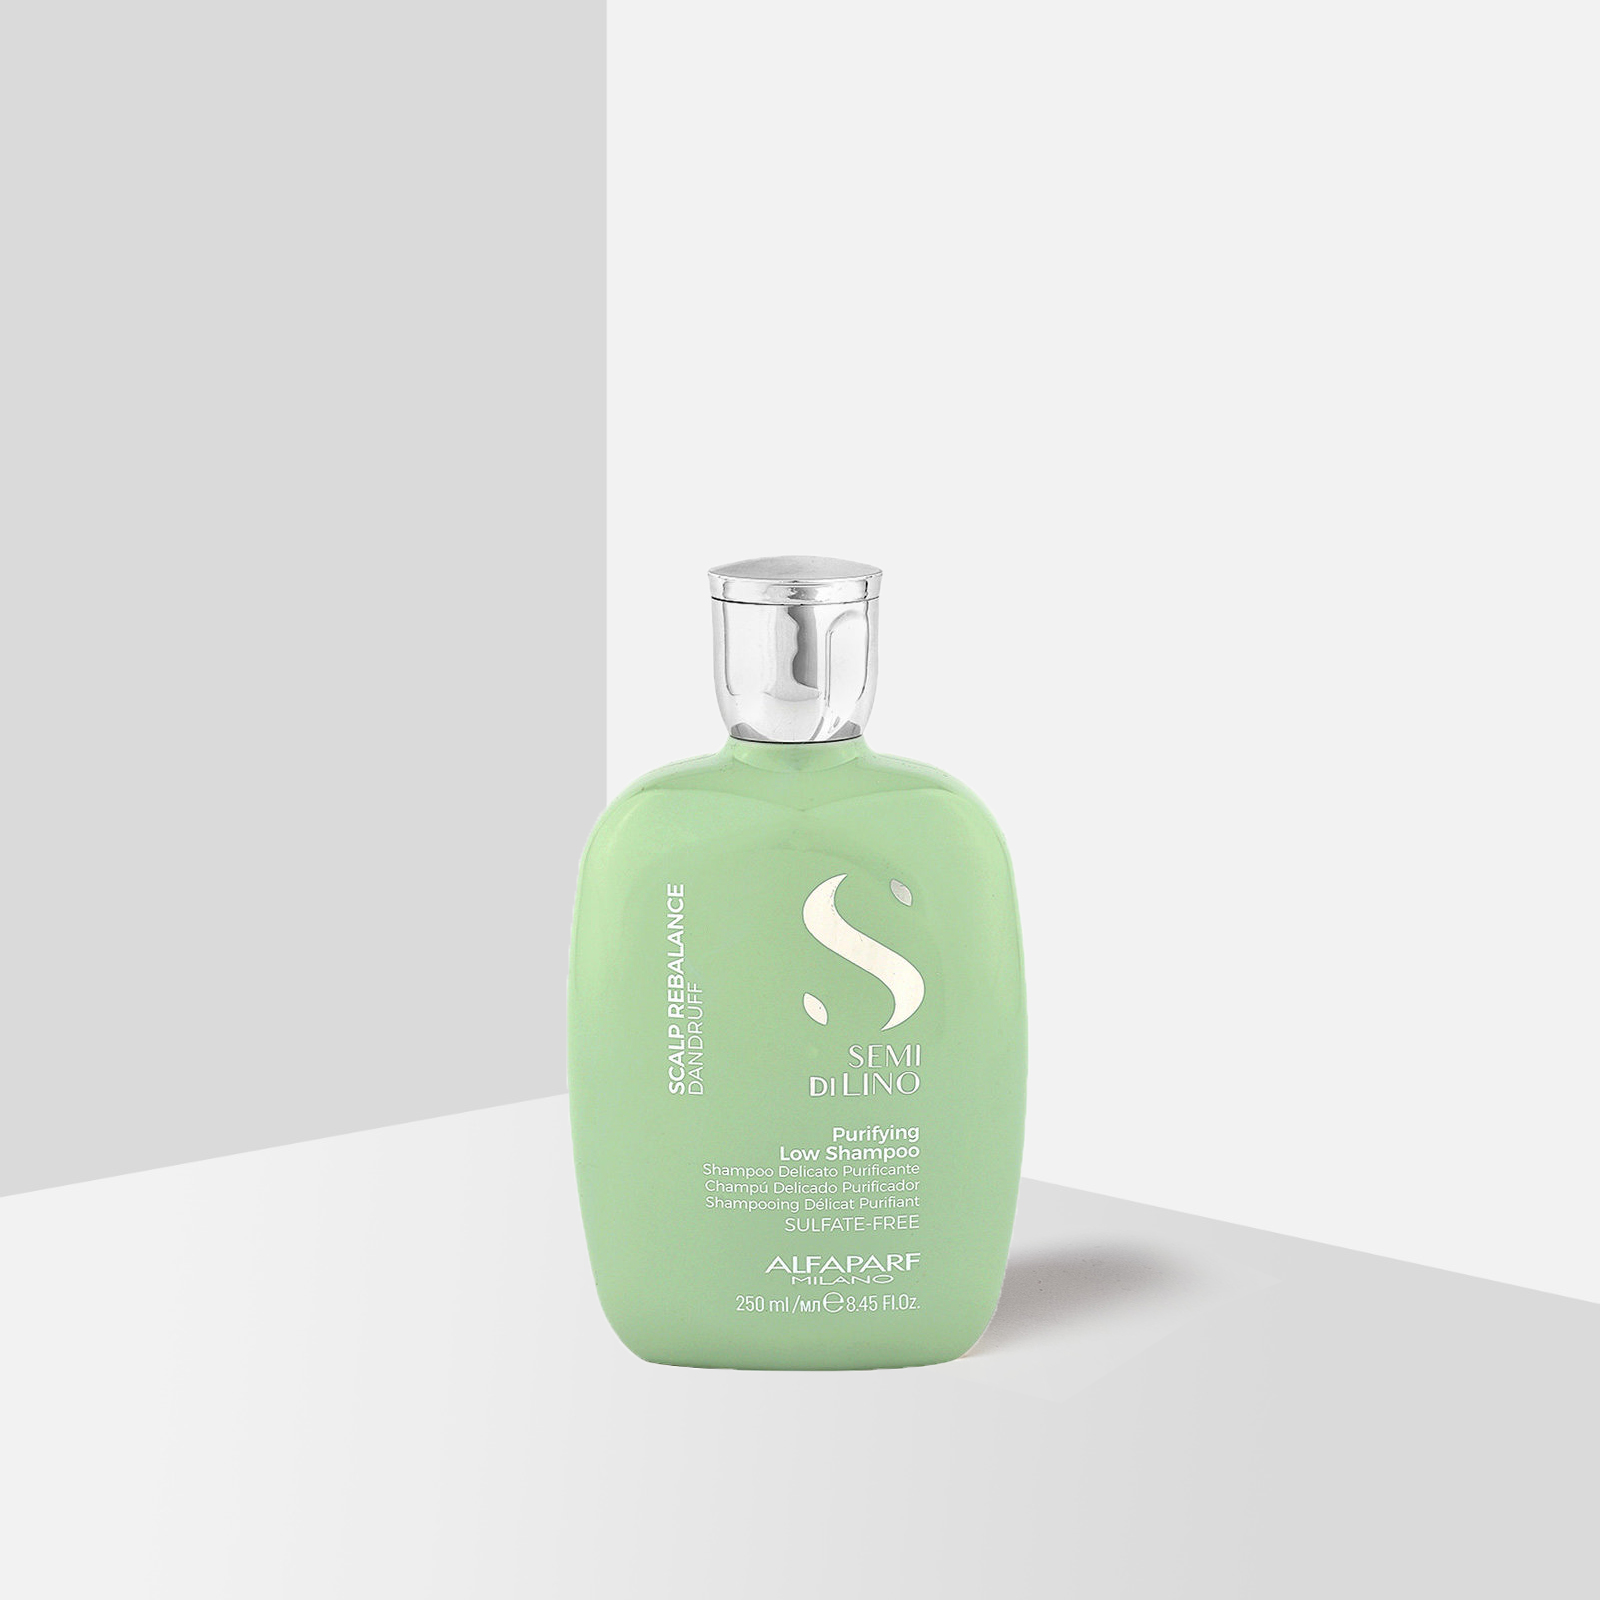 Alfaparf Semi di Lino Purifying Shampoo 250ml